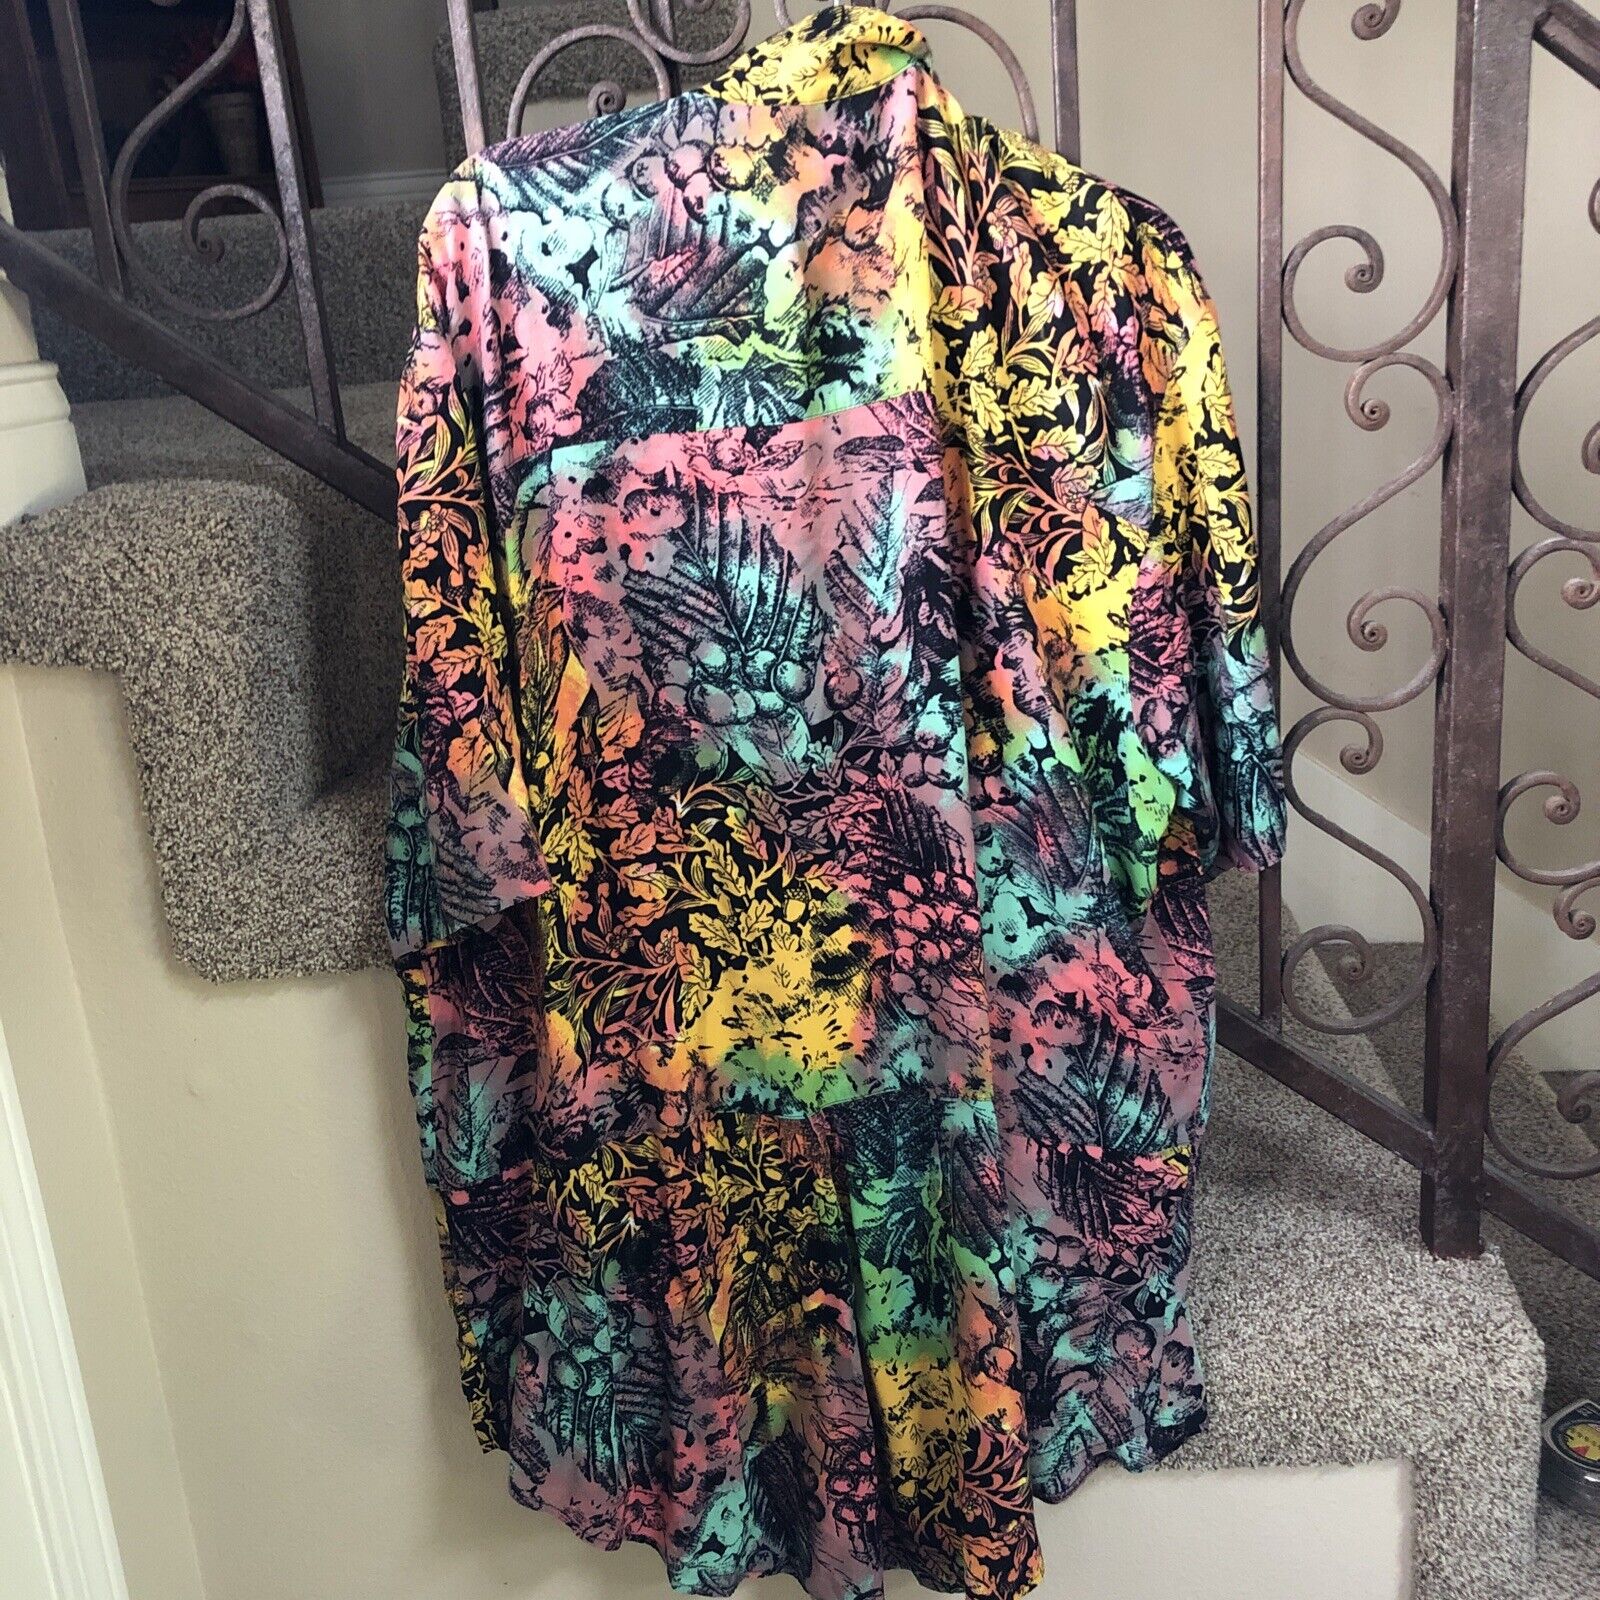 RARE…Vintage 80s Dream Shirt Wild Loud Colorful Neon Flowers Button Up Sz 2x